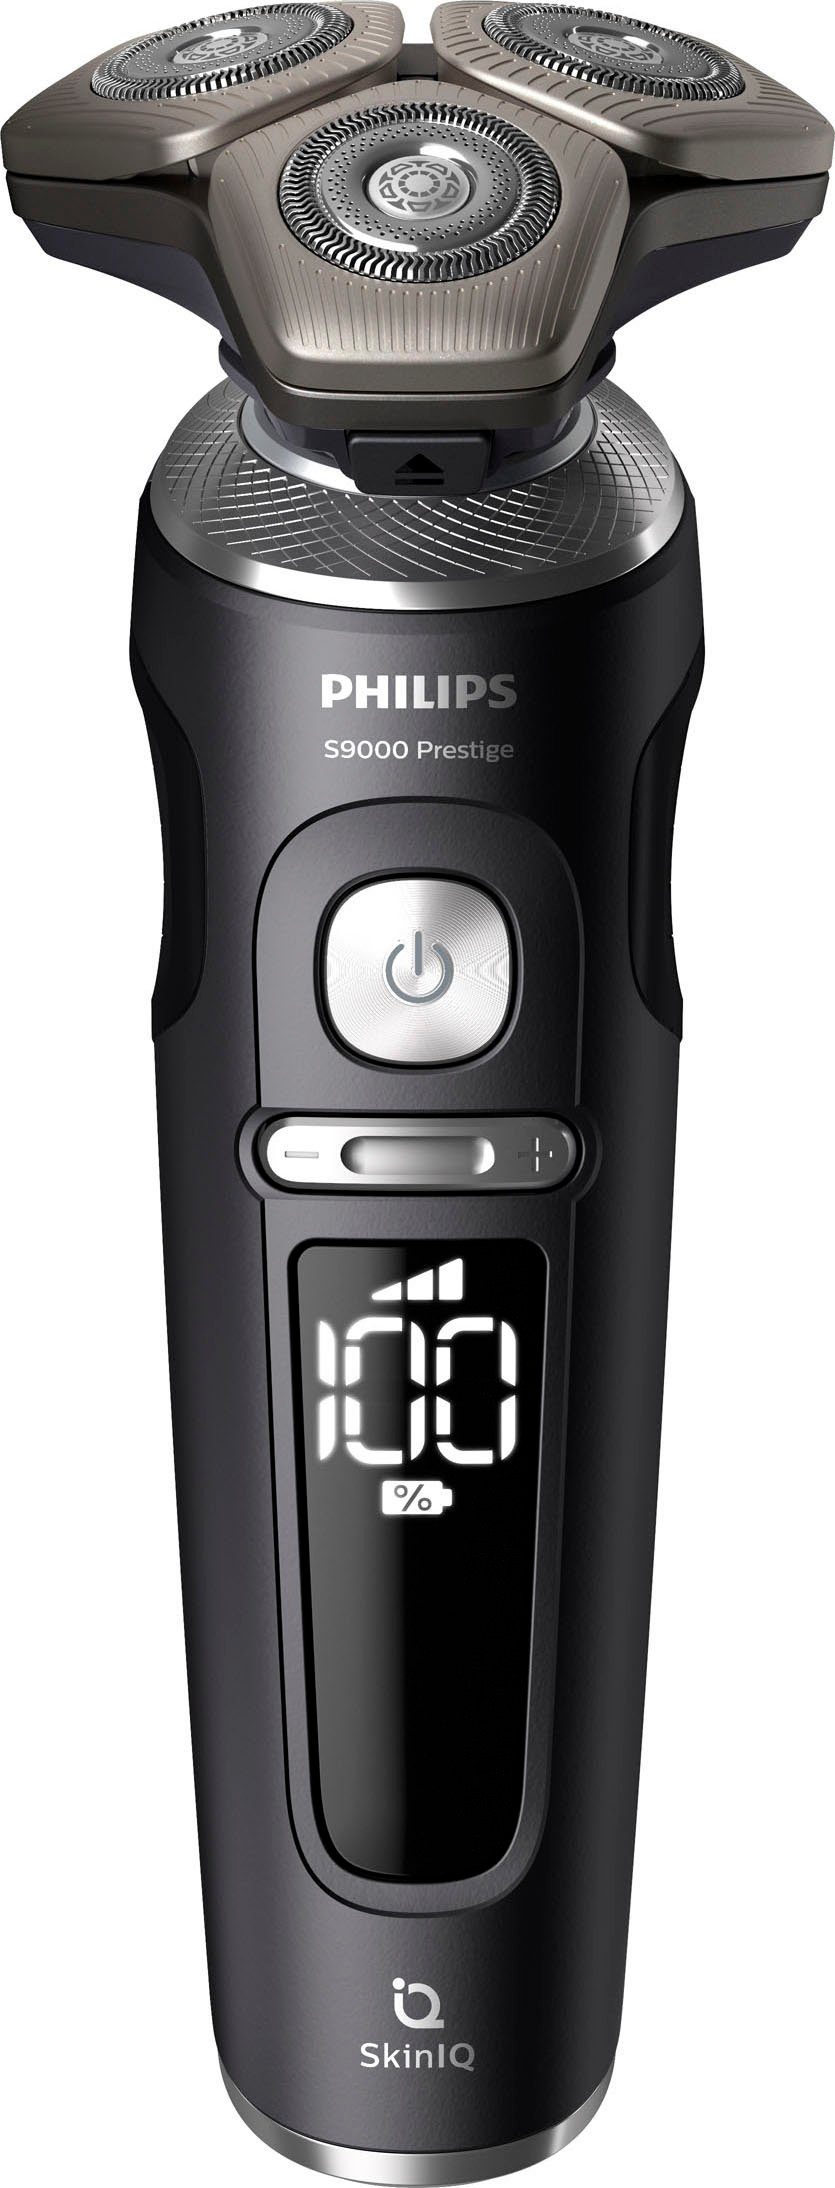 Philips Elektrorasierer Series 9000 SP9840/32, SkinIQ Technologie 1, Prestige Etui, Reinigungsstation, Aufsätze: mit